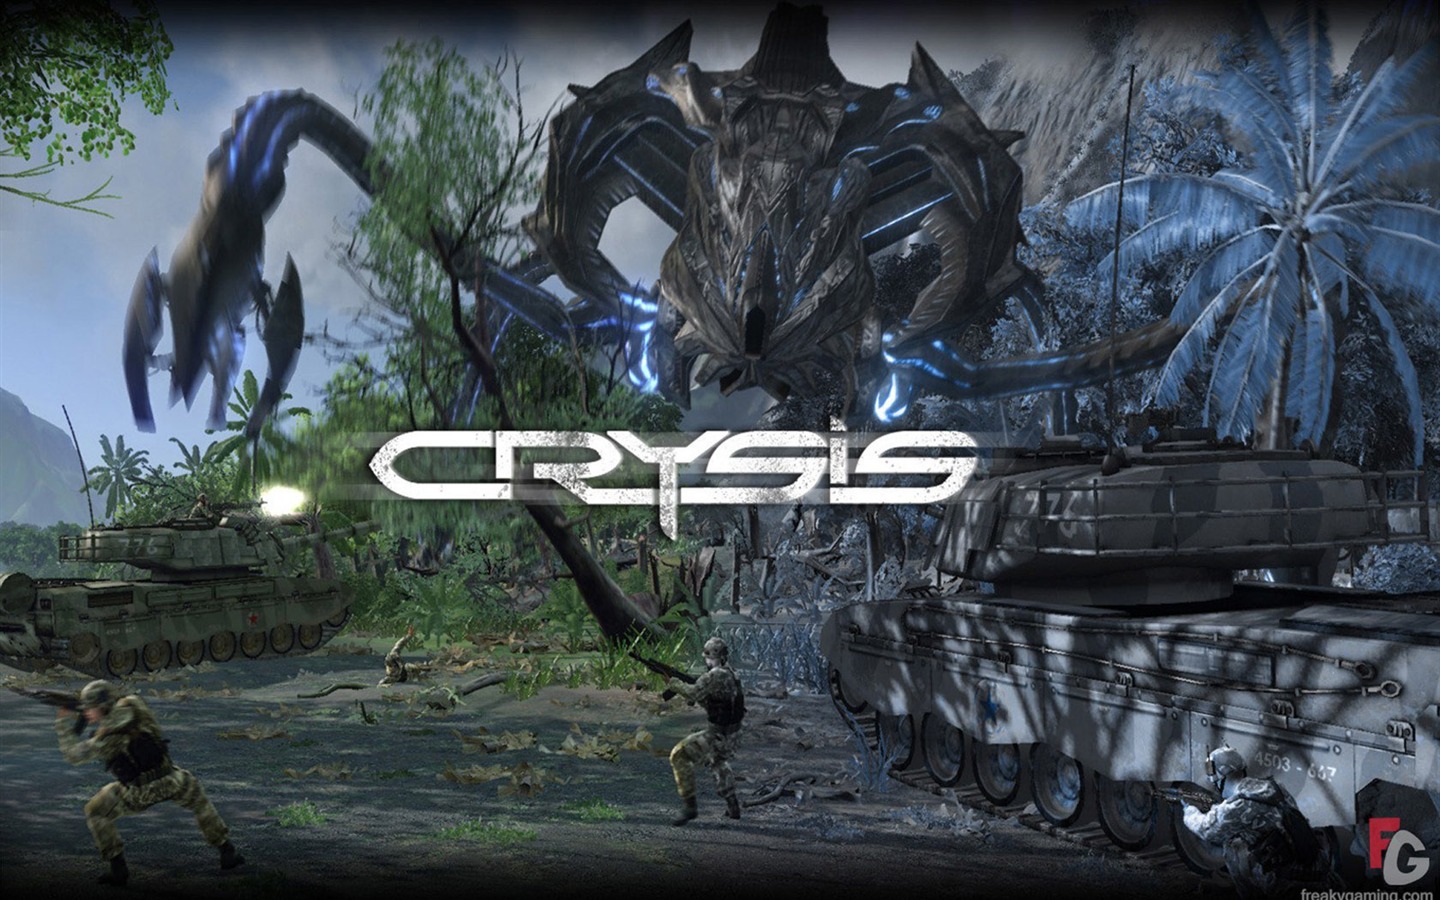  Crysisの壁紙(3) #15 - 1440x900